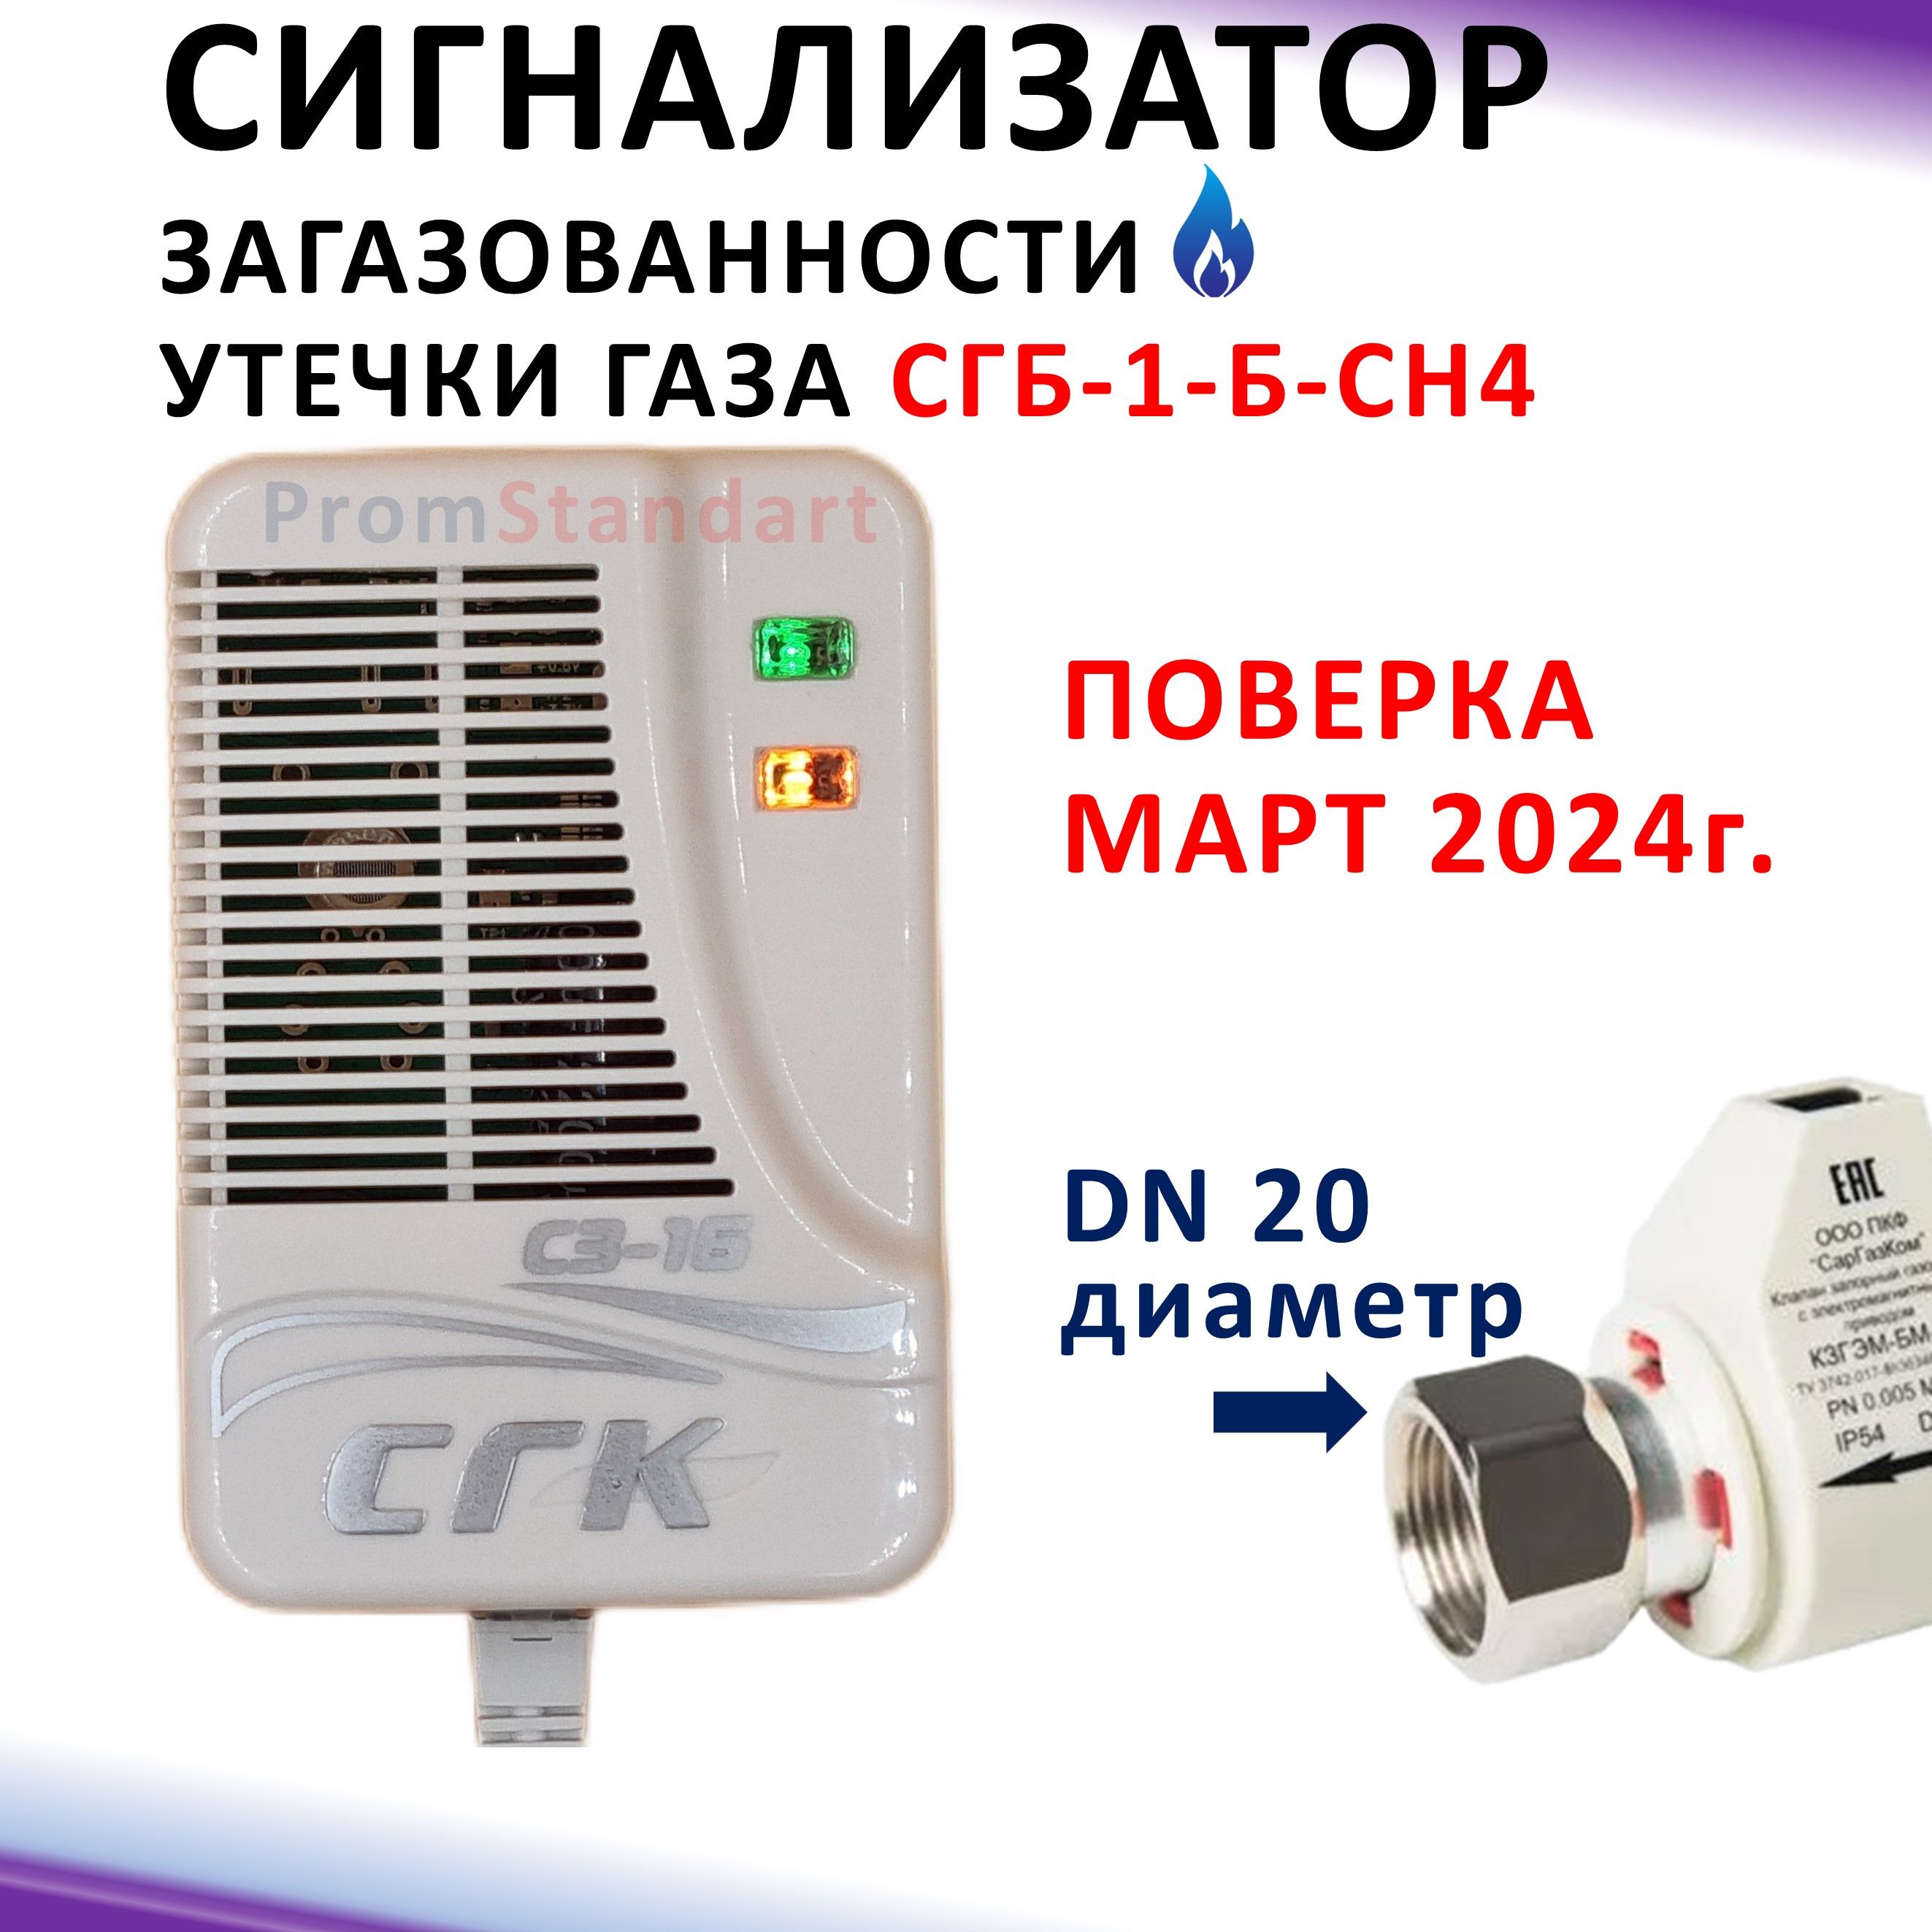 СистемазагазованностидомаСГК-1-Б-СН4Dn20НДсэлектромагнитнымклапаномКЗГЭМ-БМDN20бытовая,газовыйсигнализаторСАКЗ,оборудованиеконтролясигнализацияумныйдатчикпротечкиутечкигаза.